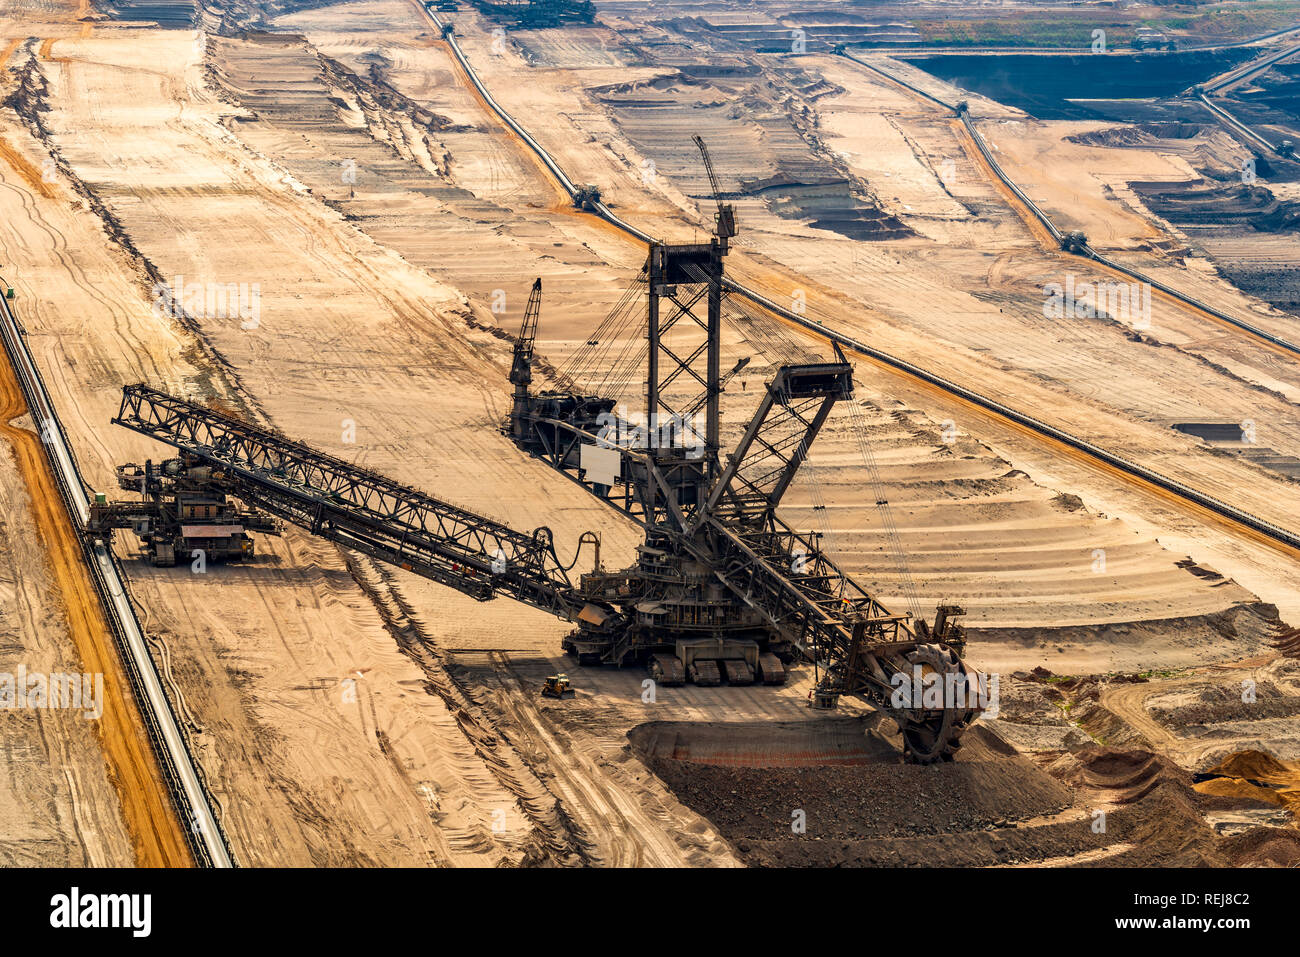 ELSDORF, NRW, Germania - 12 agosto 2018: escavatore mineraria nella miniera di lignite Hambach. Mostra la degradazione di fossili carbone marrone Foto Stock